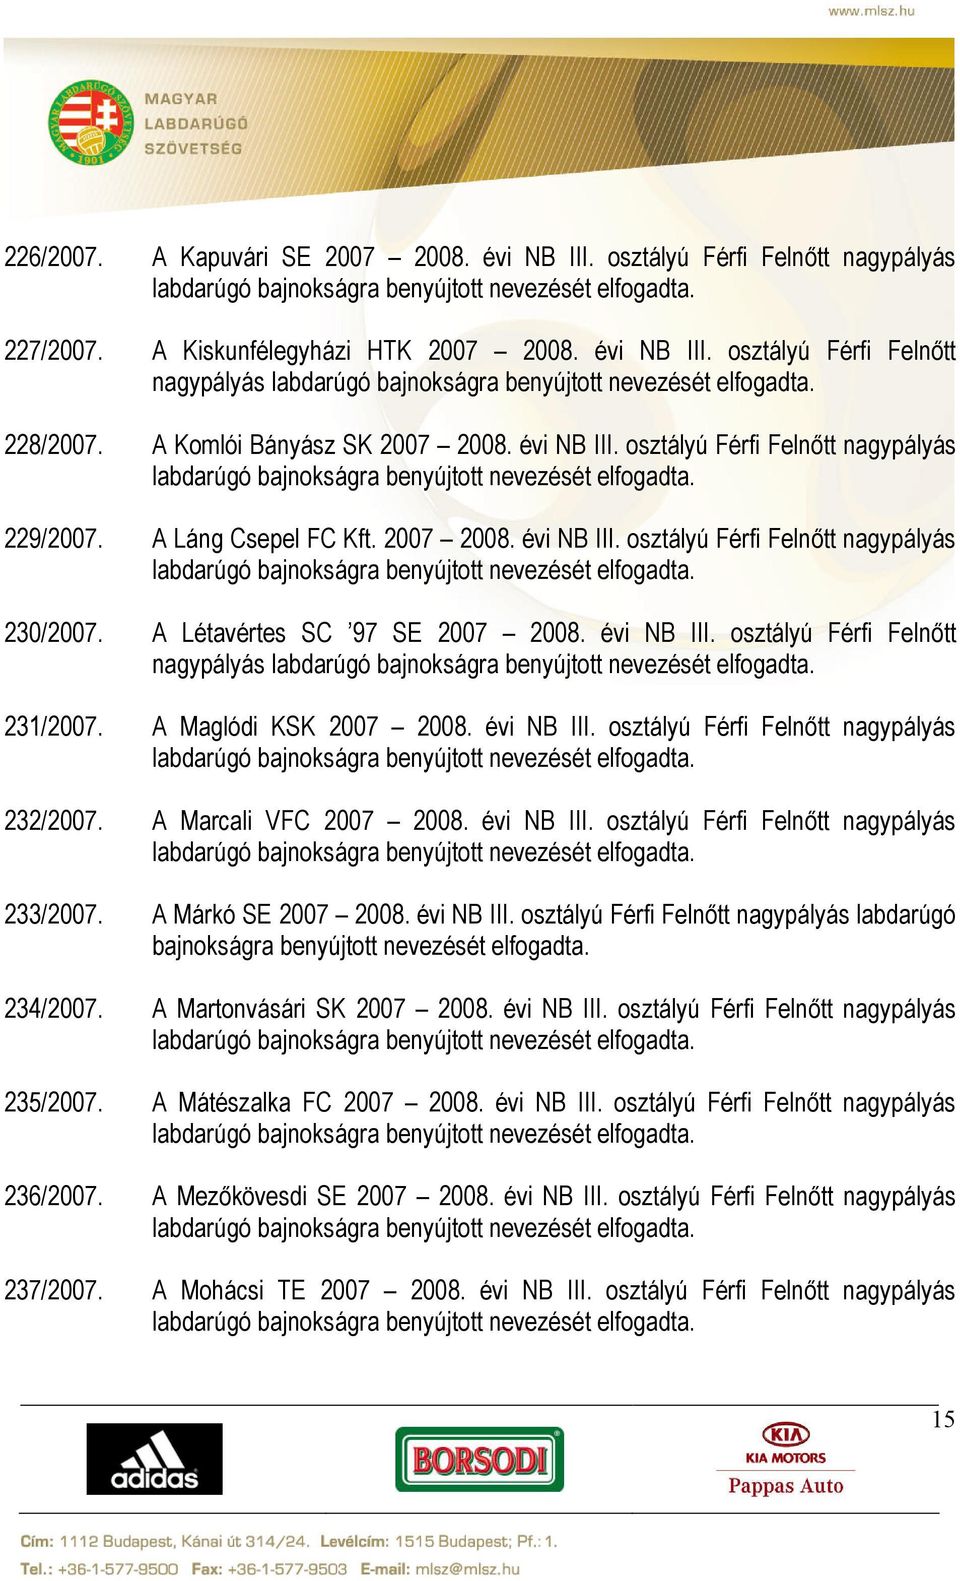 A Létavértes SC 97 SE 2007 2008. évi NB III. osztályú Férfi Felnőtt nagypályás 231/2007. A Maglódi KSK 2007 2008. évi NB III. osztályú Férfi Felnőtt nagypályás 232/2007. A Marcali VFC 2007 2008.